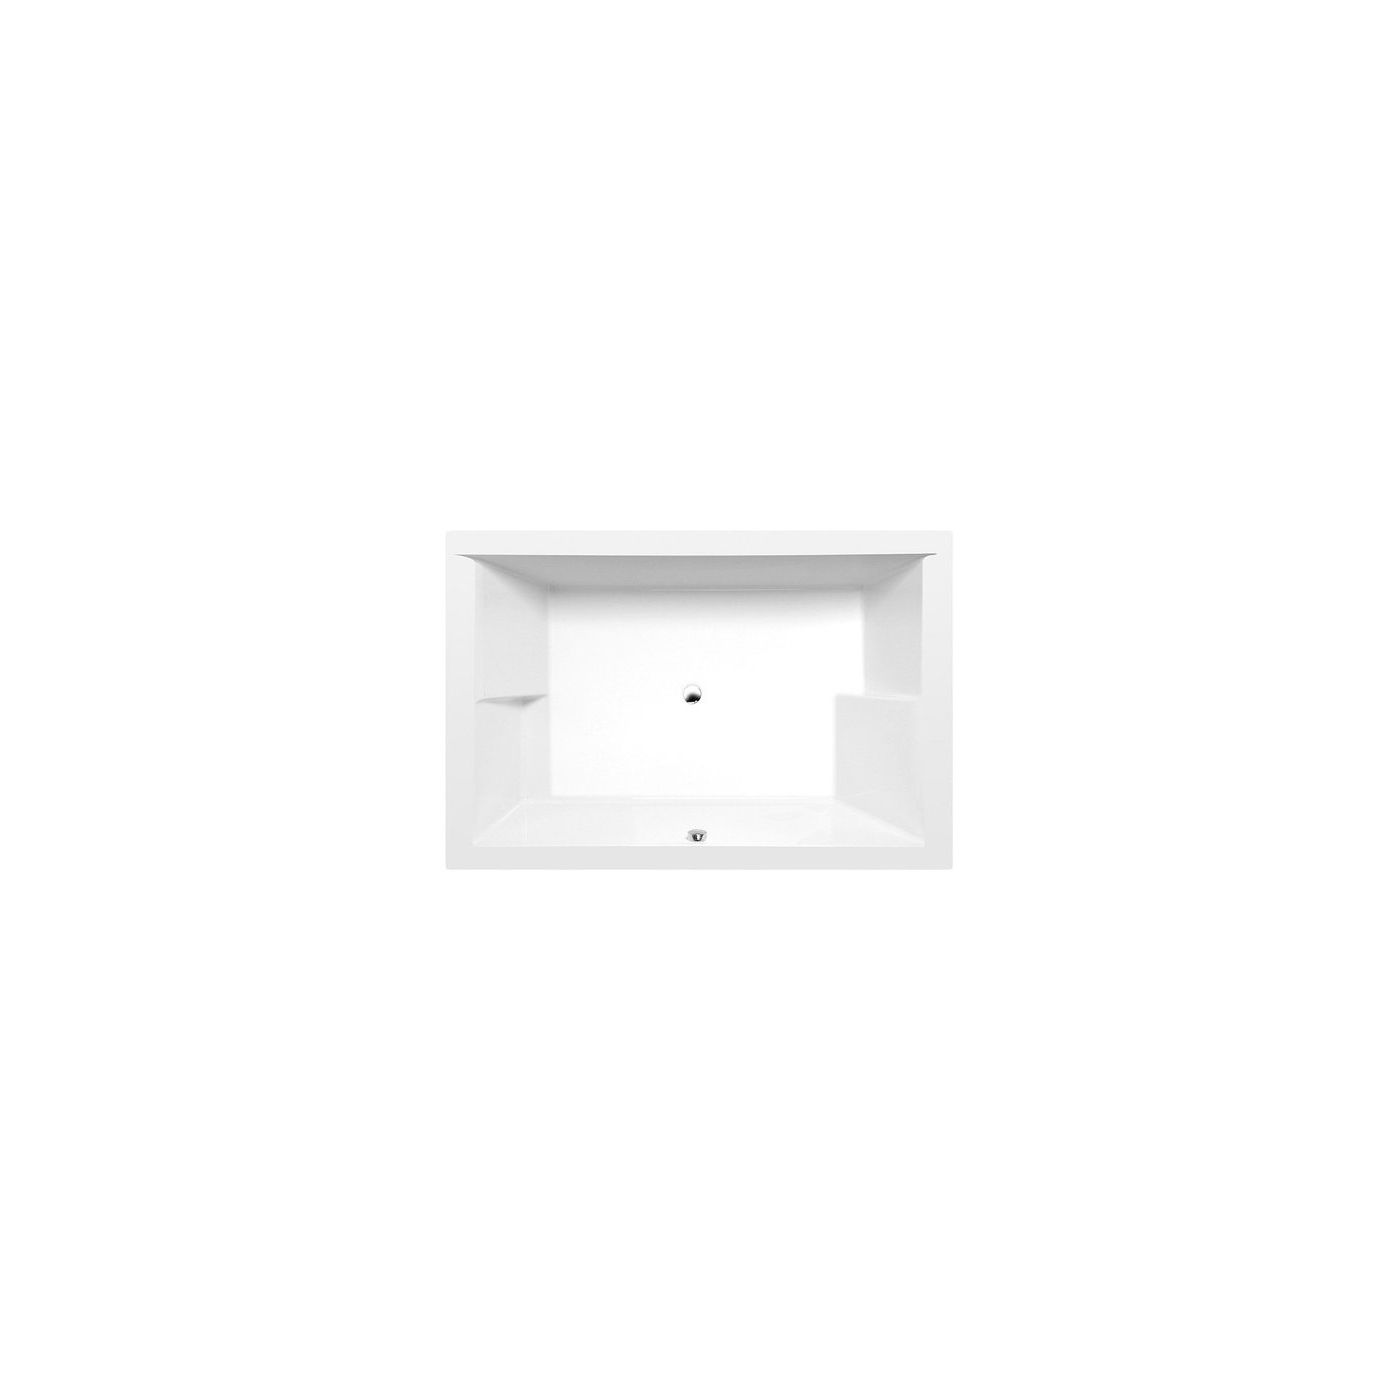 Polysan Dupla 180x120 acryl inbouw ligbad vierkant wit